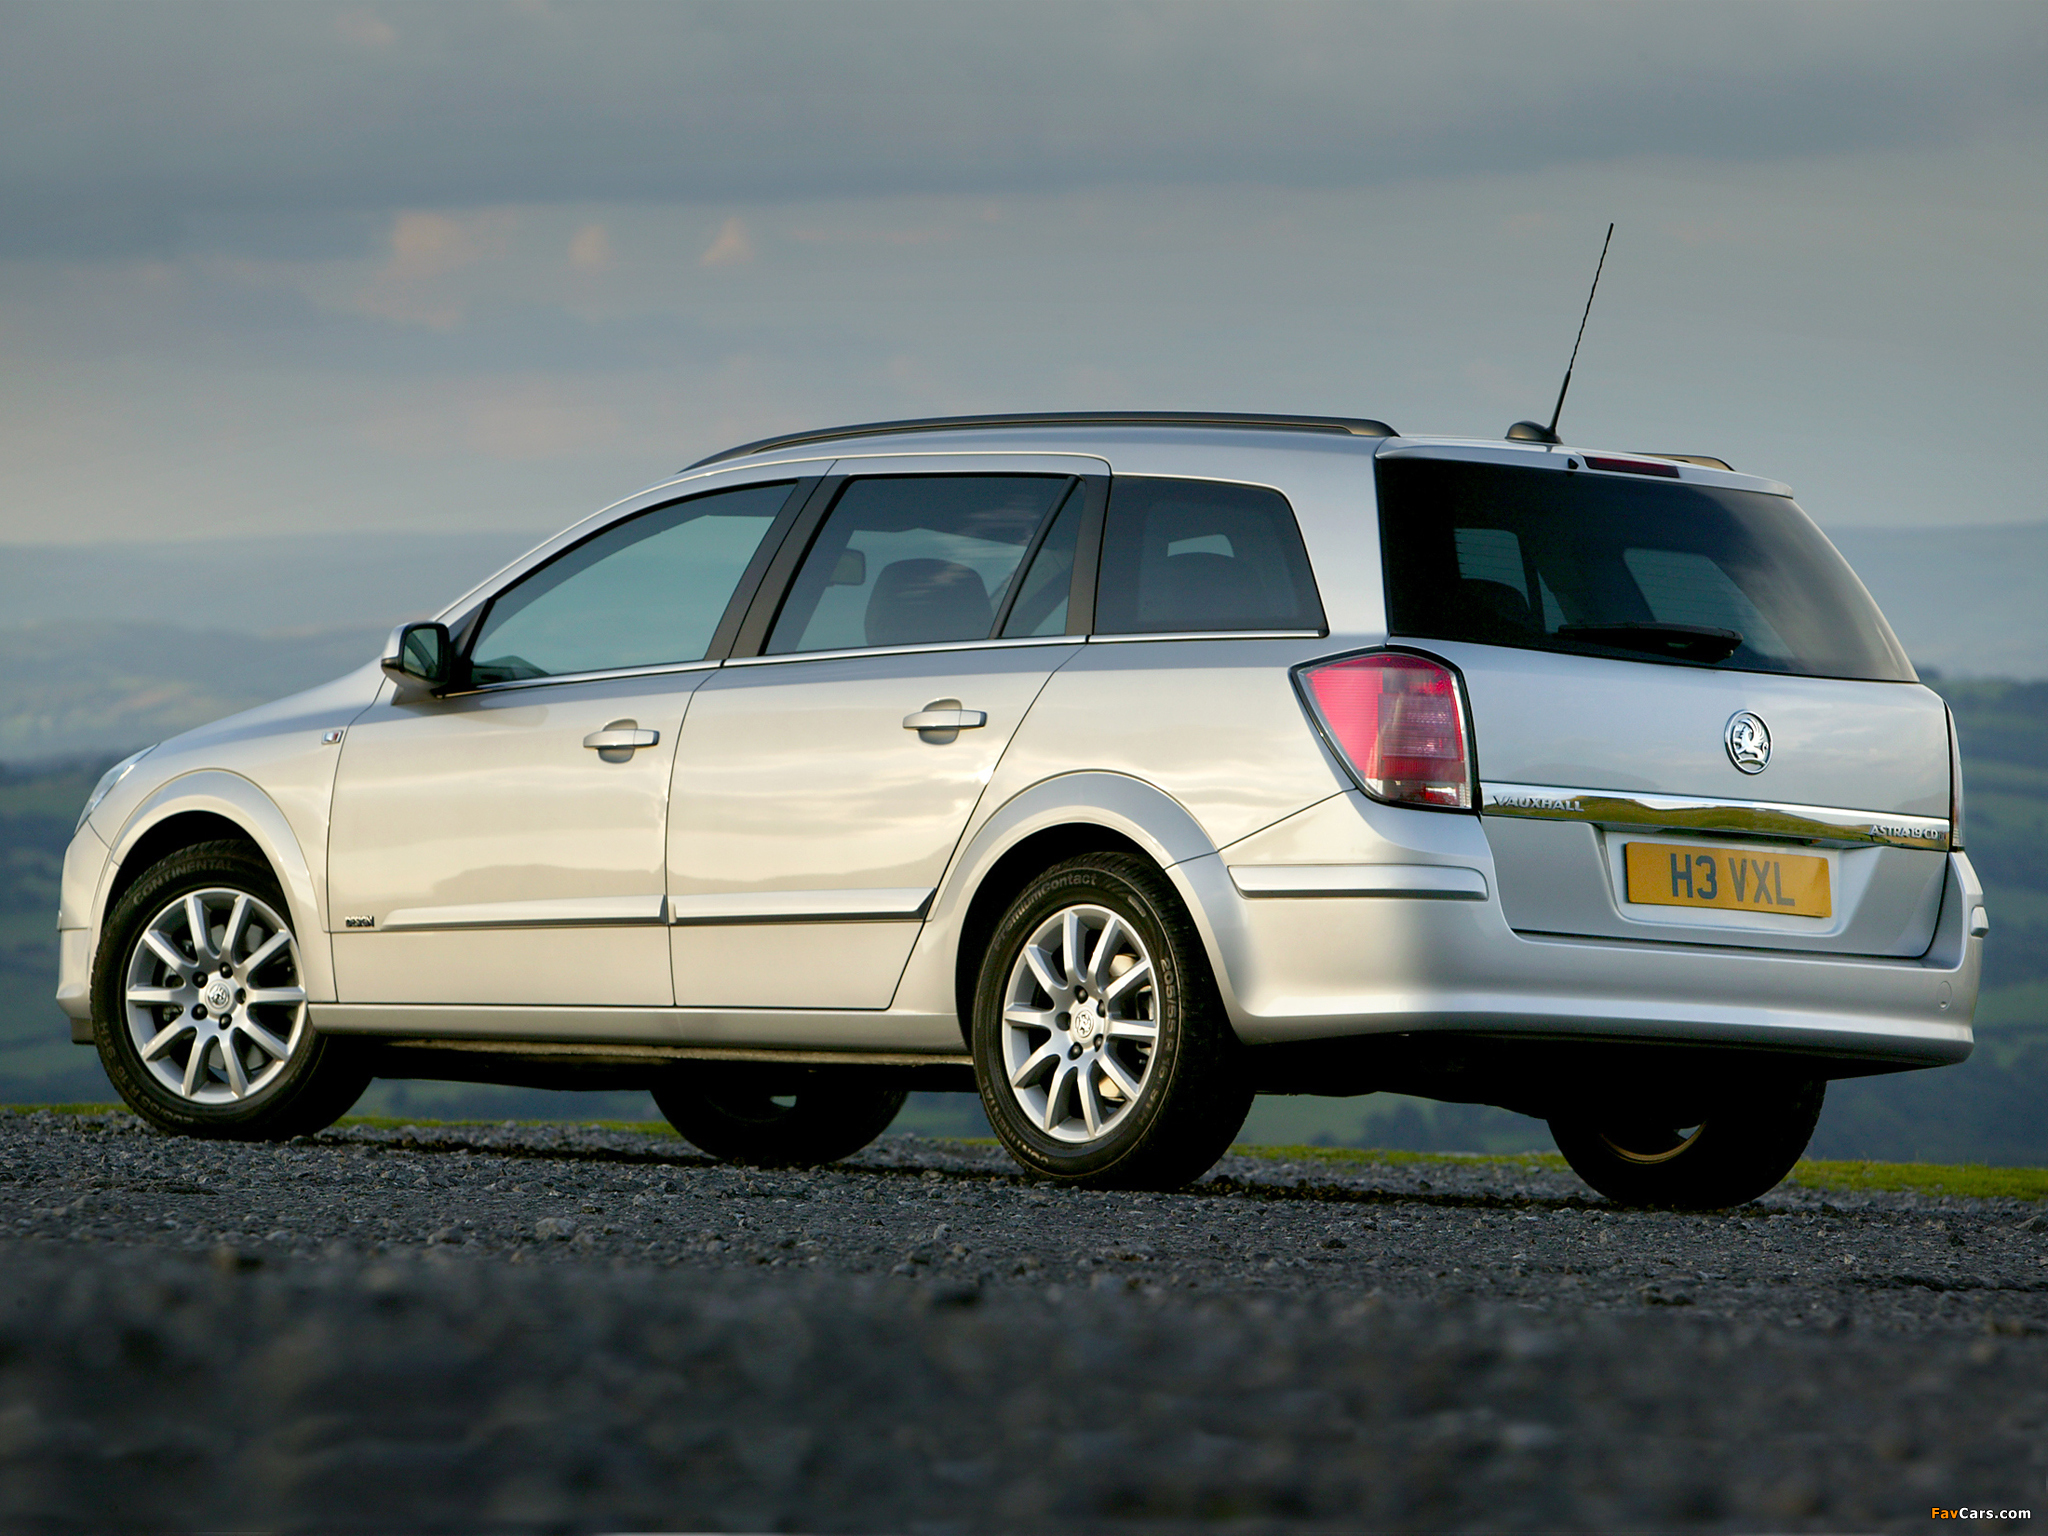 Универсал 1 7. Opel Astra 2004 универсал. Opel Astra h Wagon 2004. Opel Astra h 1.6 универсал.